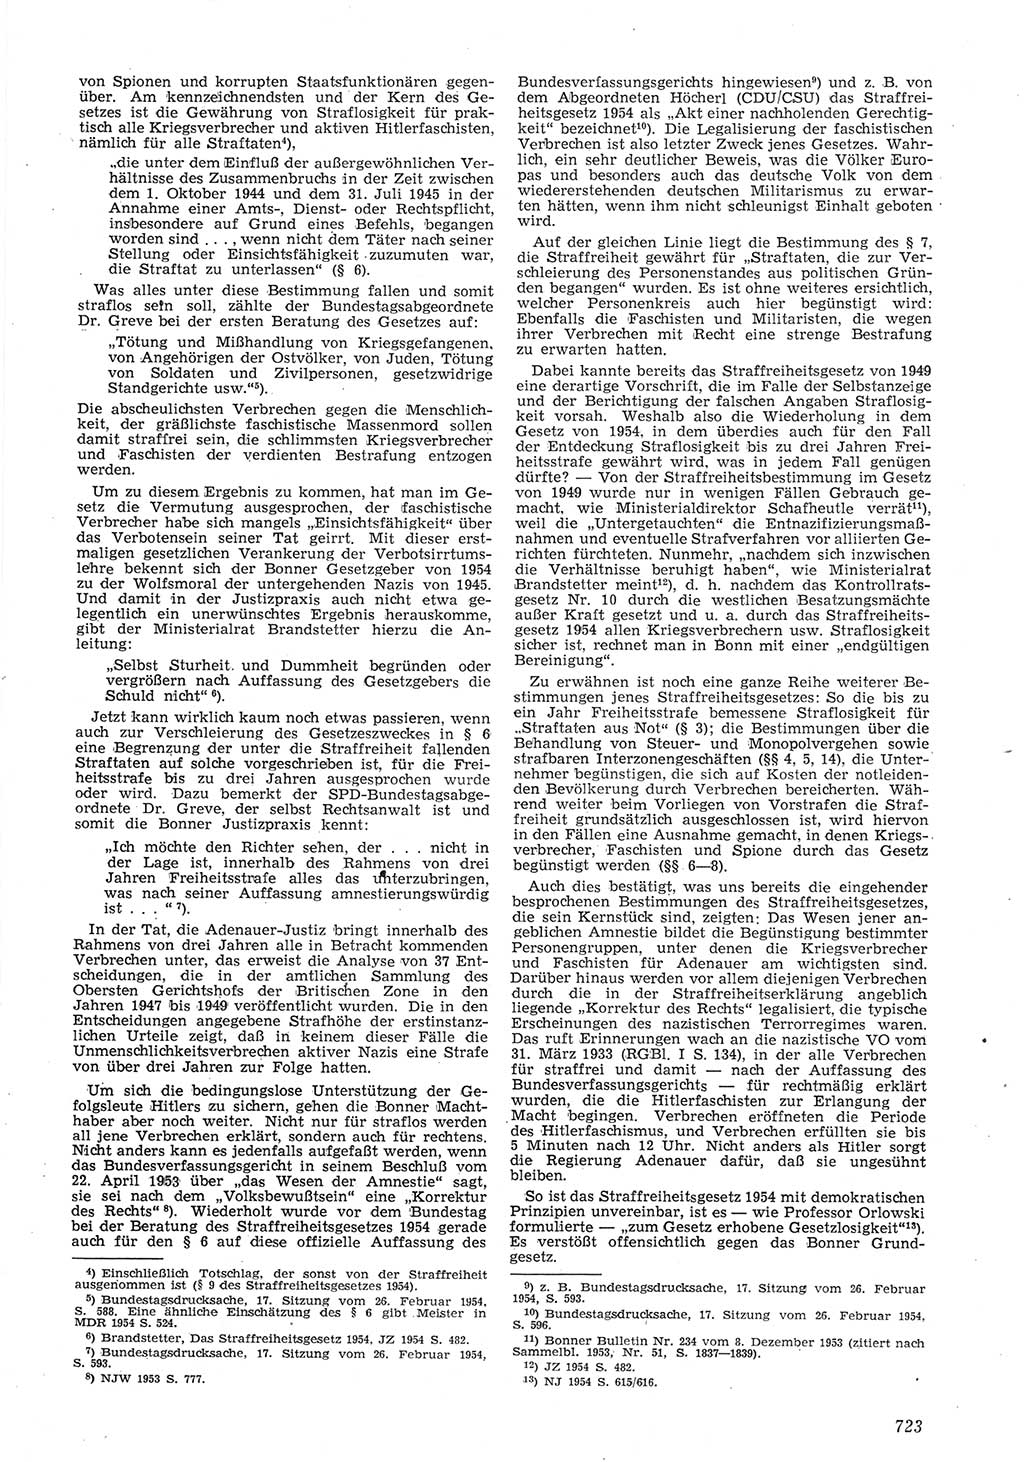 Neue Justiz (NJ), Zeitschrift für Recht und Rechtswissenschaft [Deutsche Demokratische Republik (DDR)], 8. Jahrgang 1954, Seite 723 (NJ DDR 1954, S. 723)